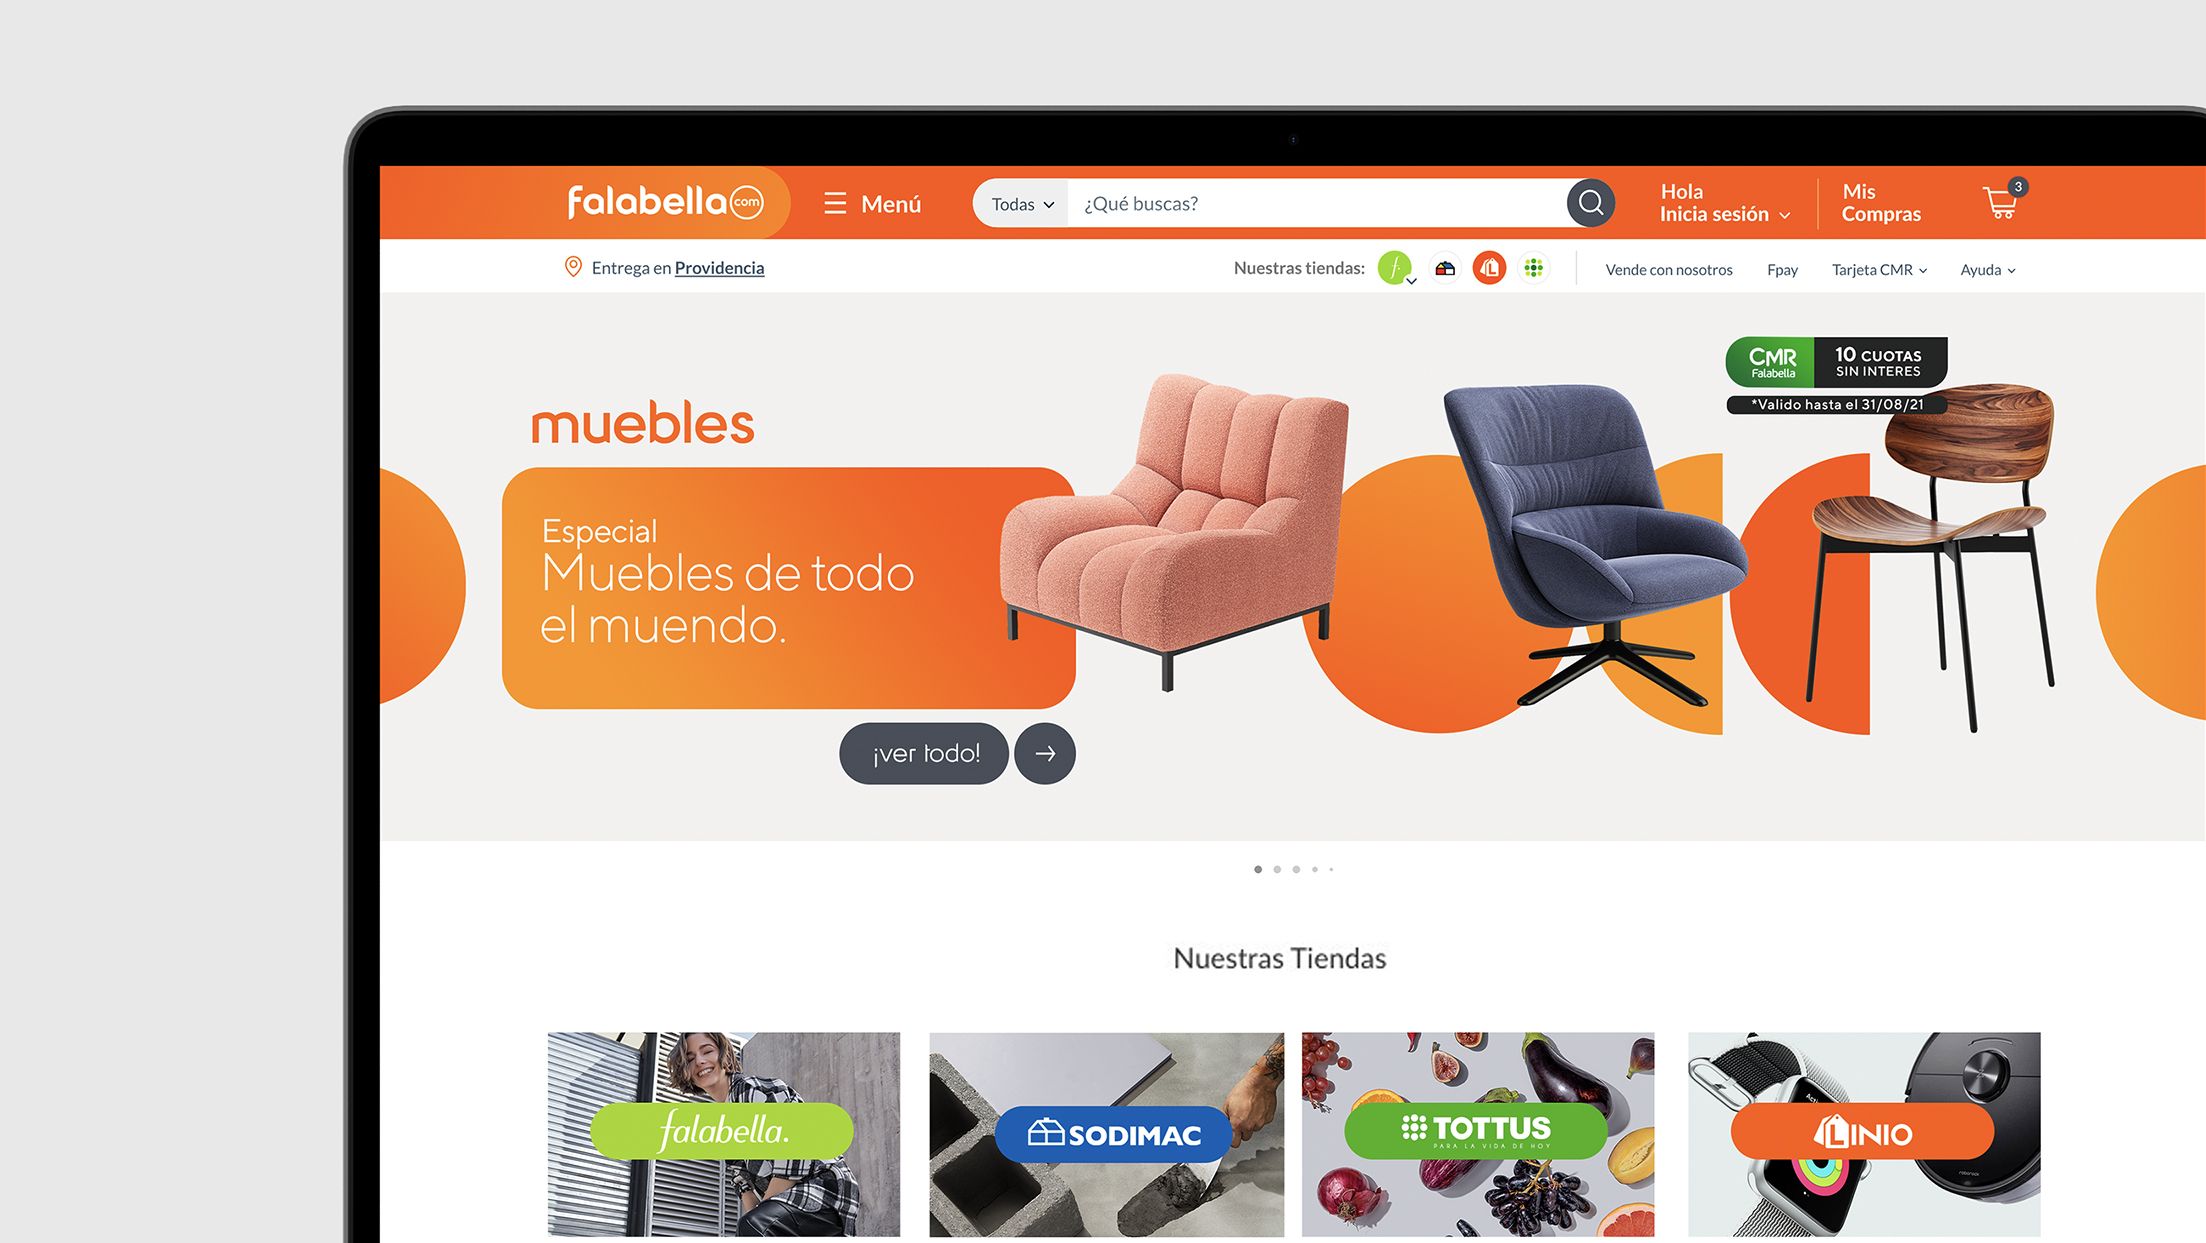 出海产品超800万种！南美最大百货公司Falabella升级电商网站并推出新品牌形象